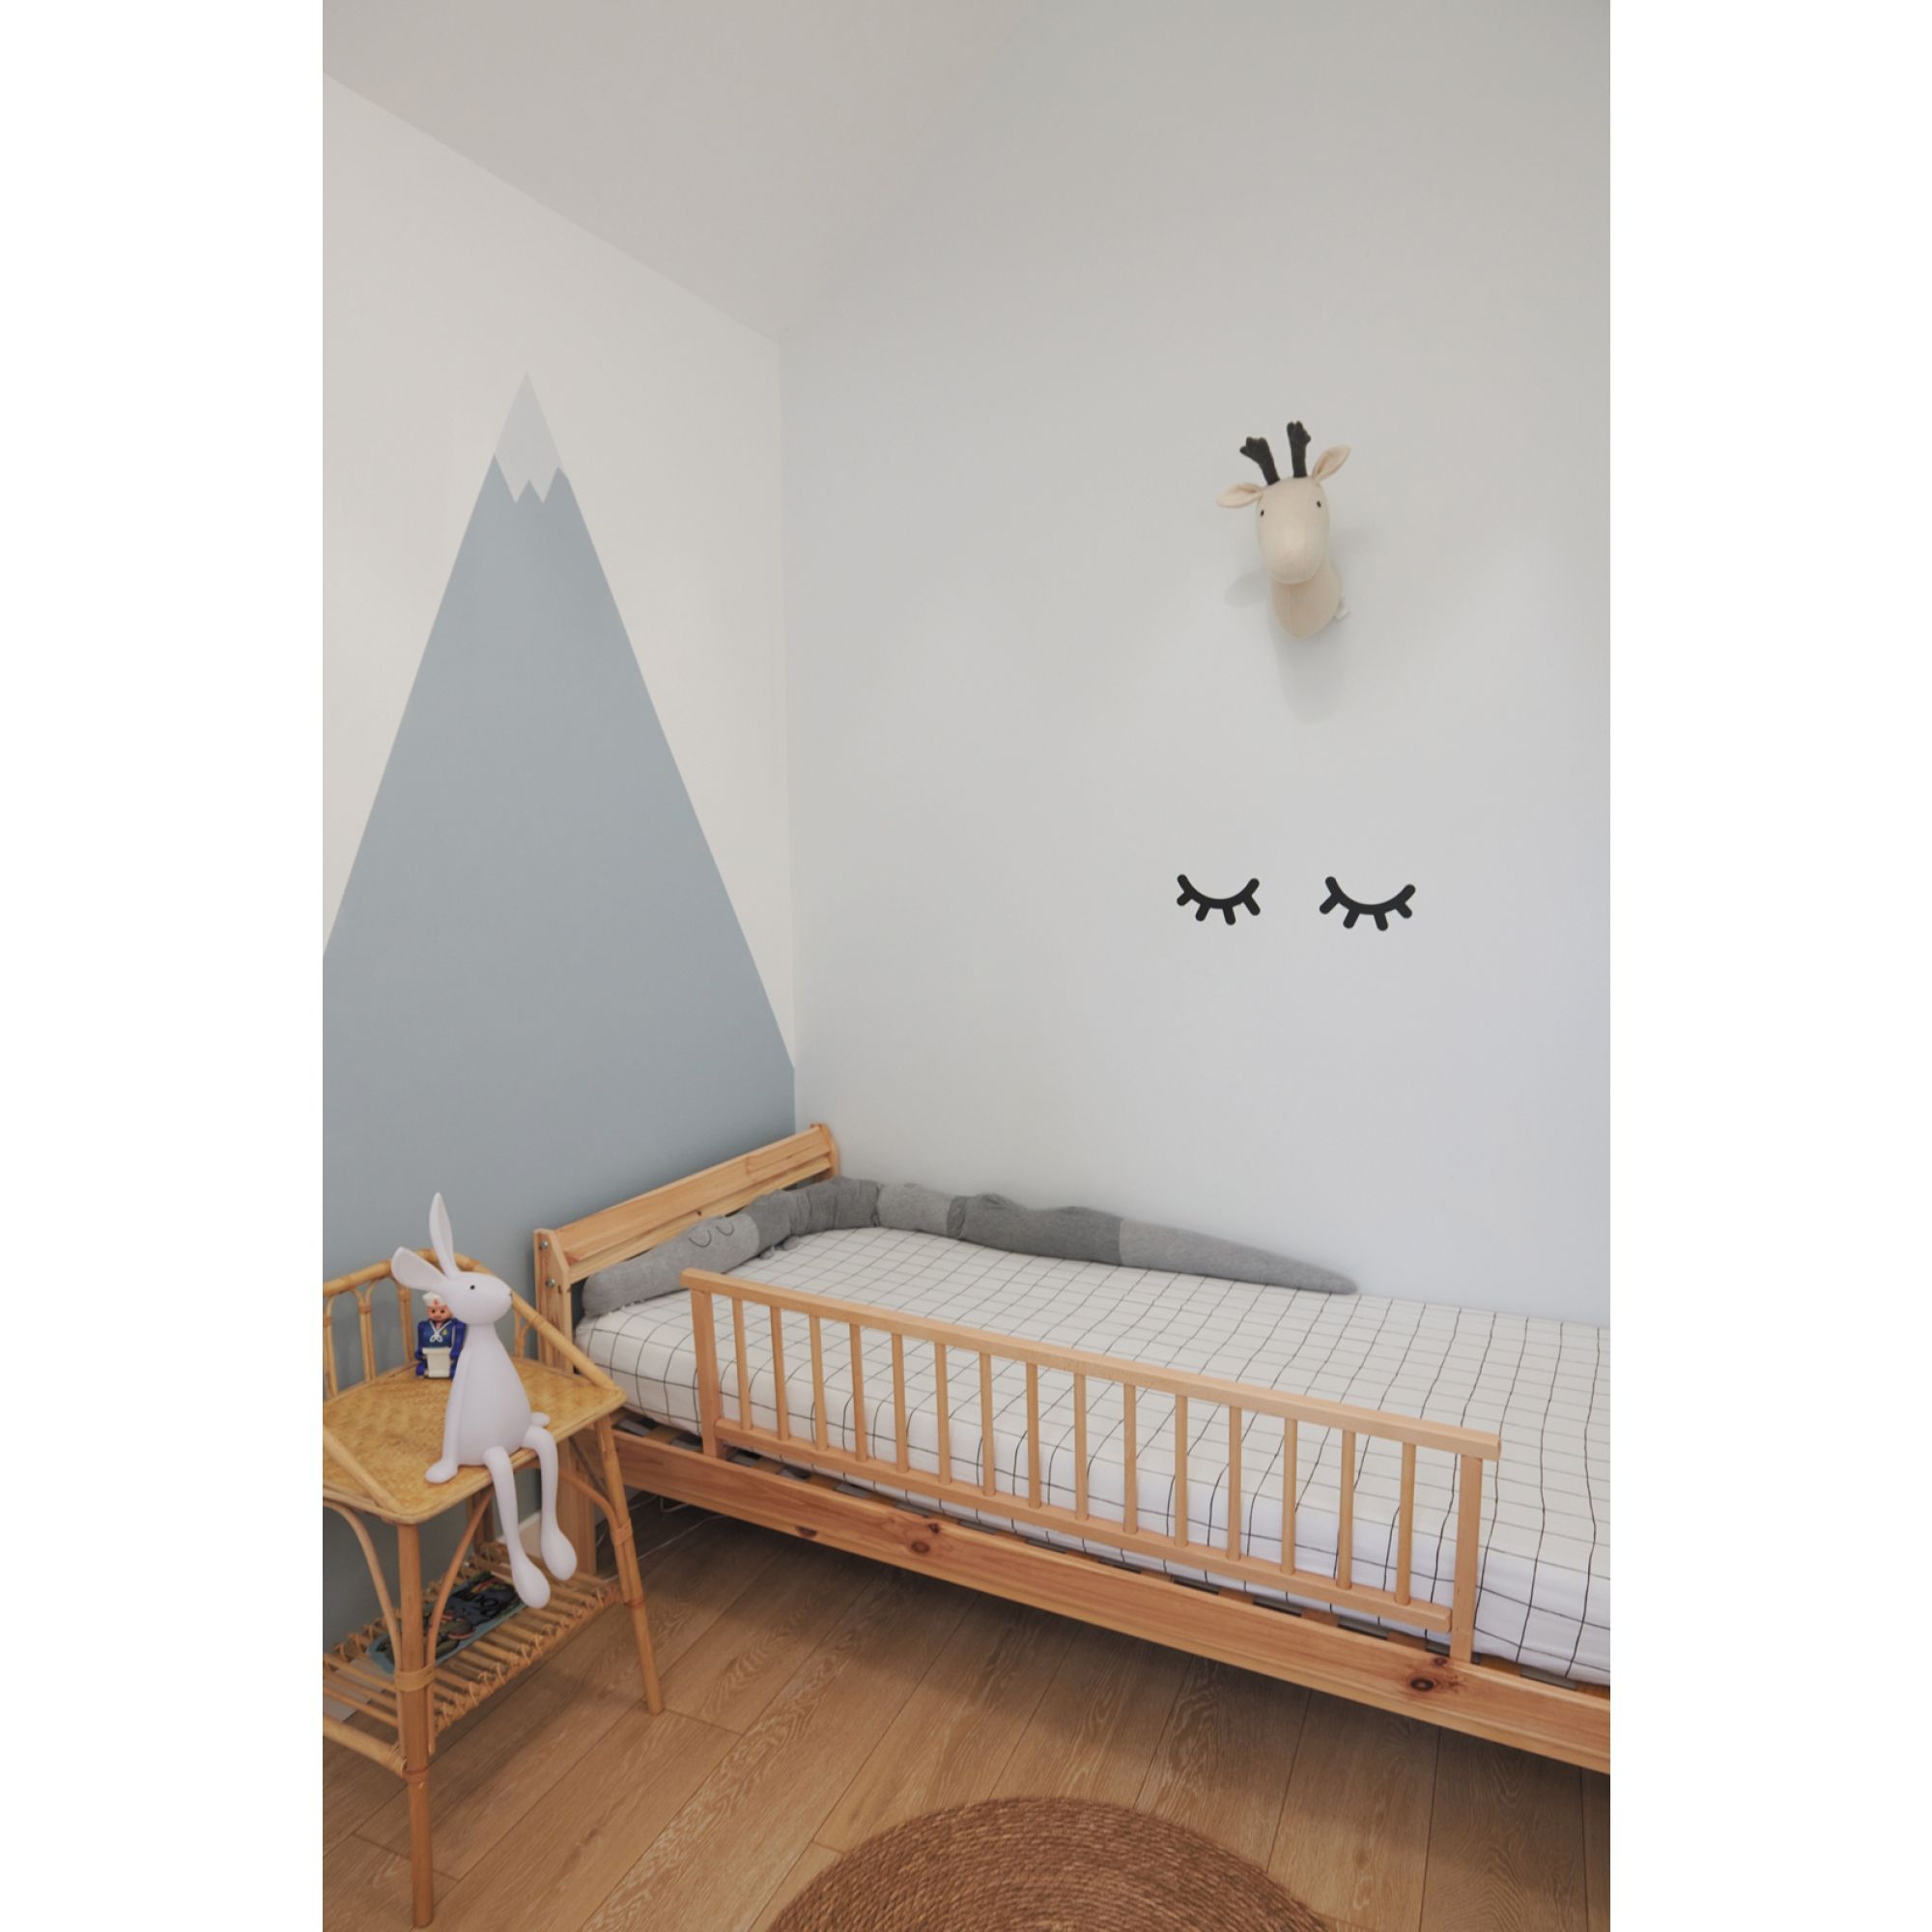 Barrière de lit enfant bois 35 x 127 cm Audrey Hybride blanc - Made in Bébé